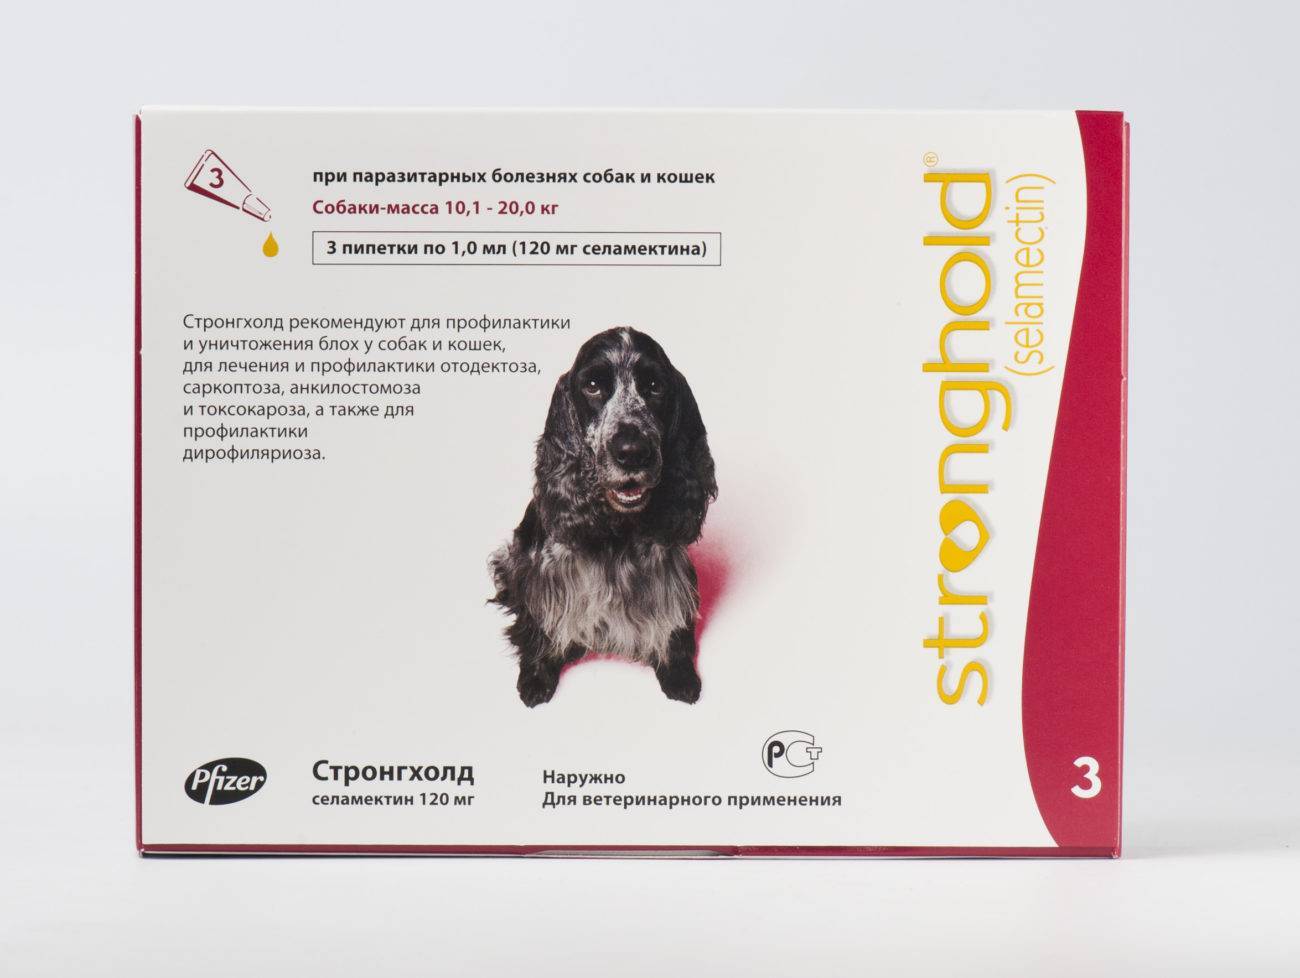 Стронгхолд для собак: описание и состав, показания и инструкция к применению, дозировка селамектина